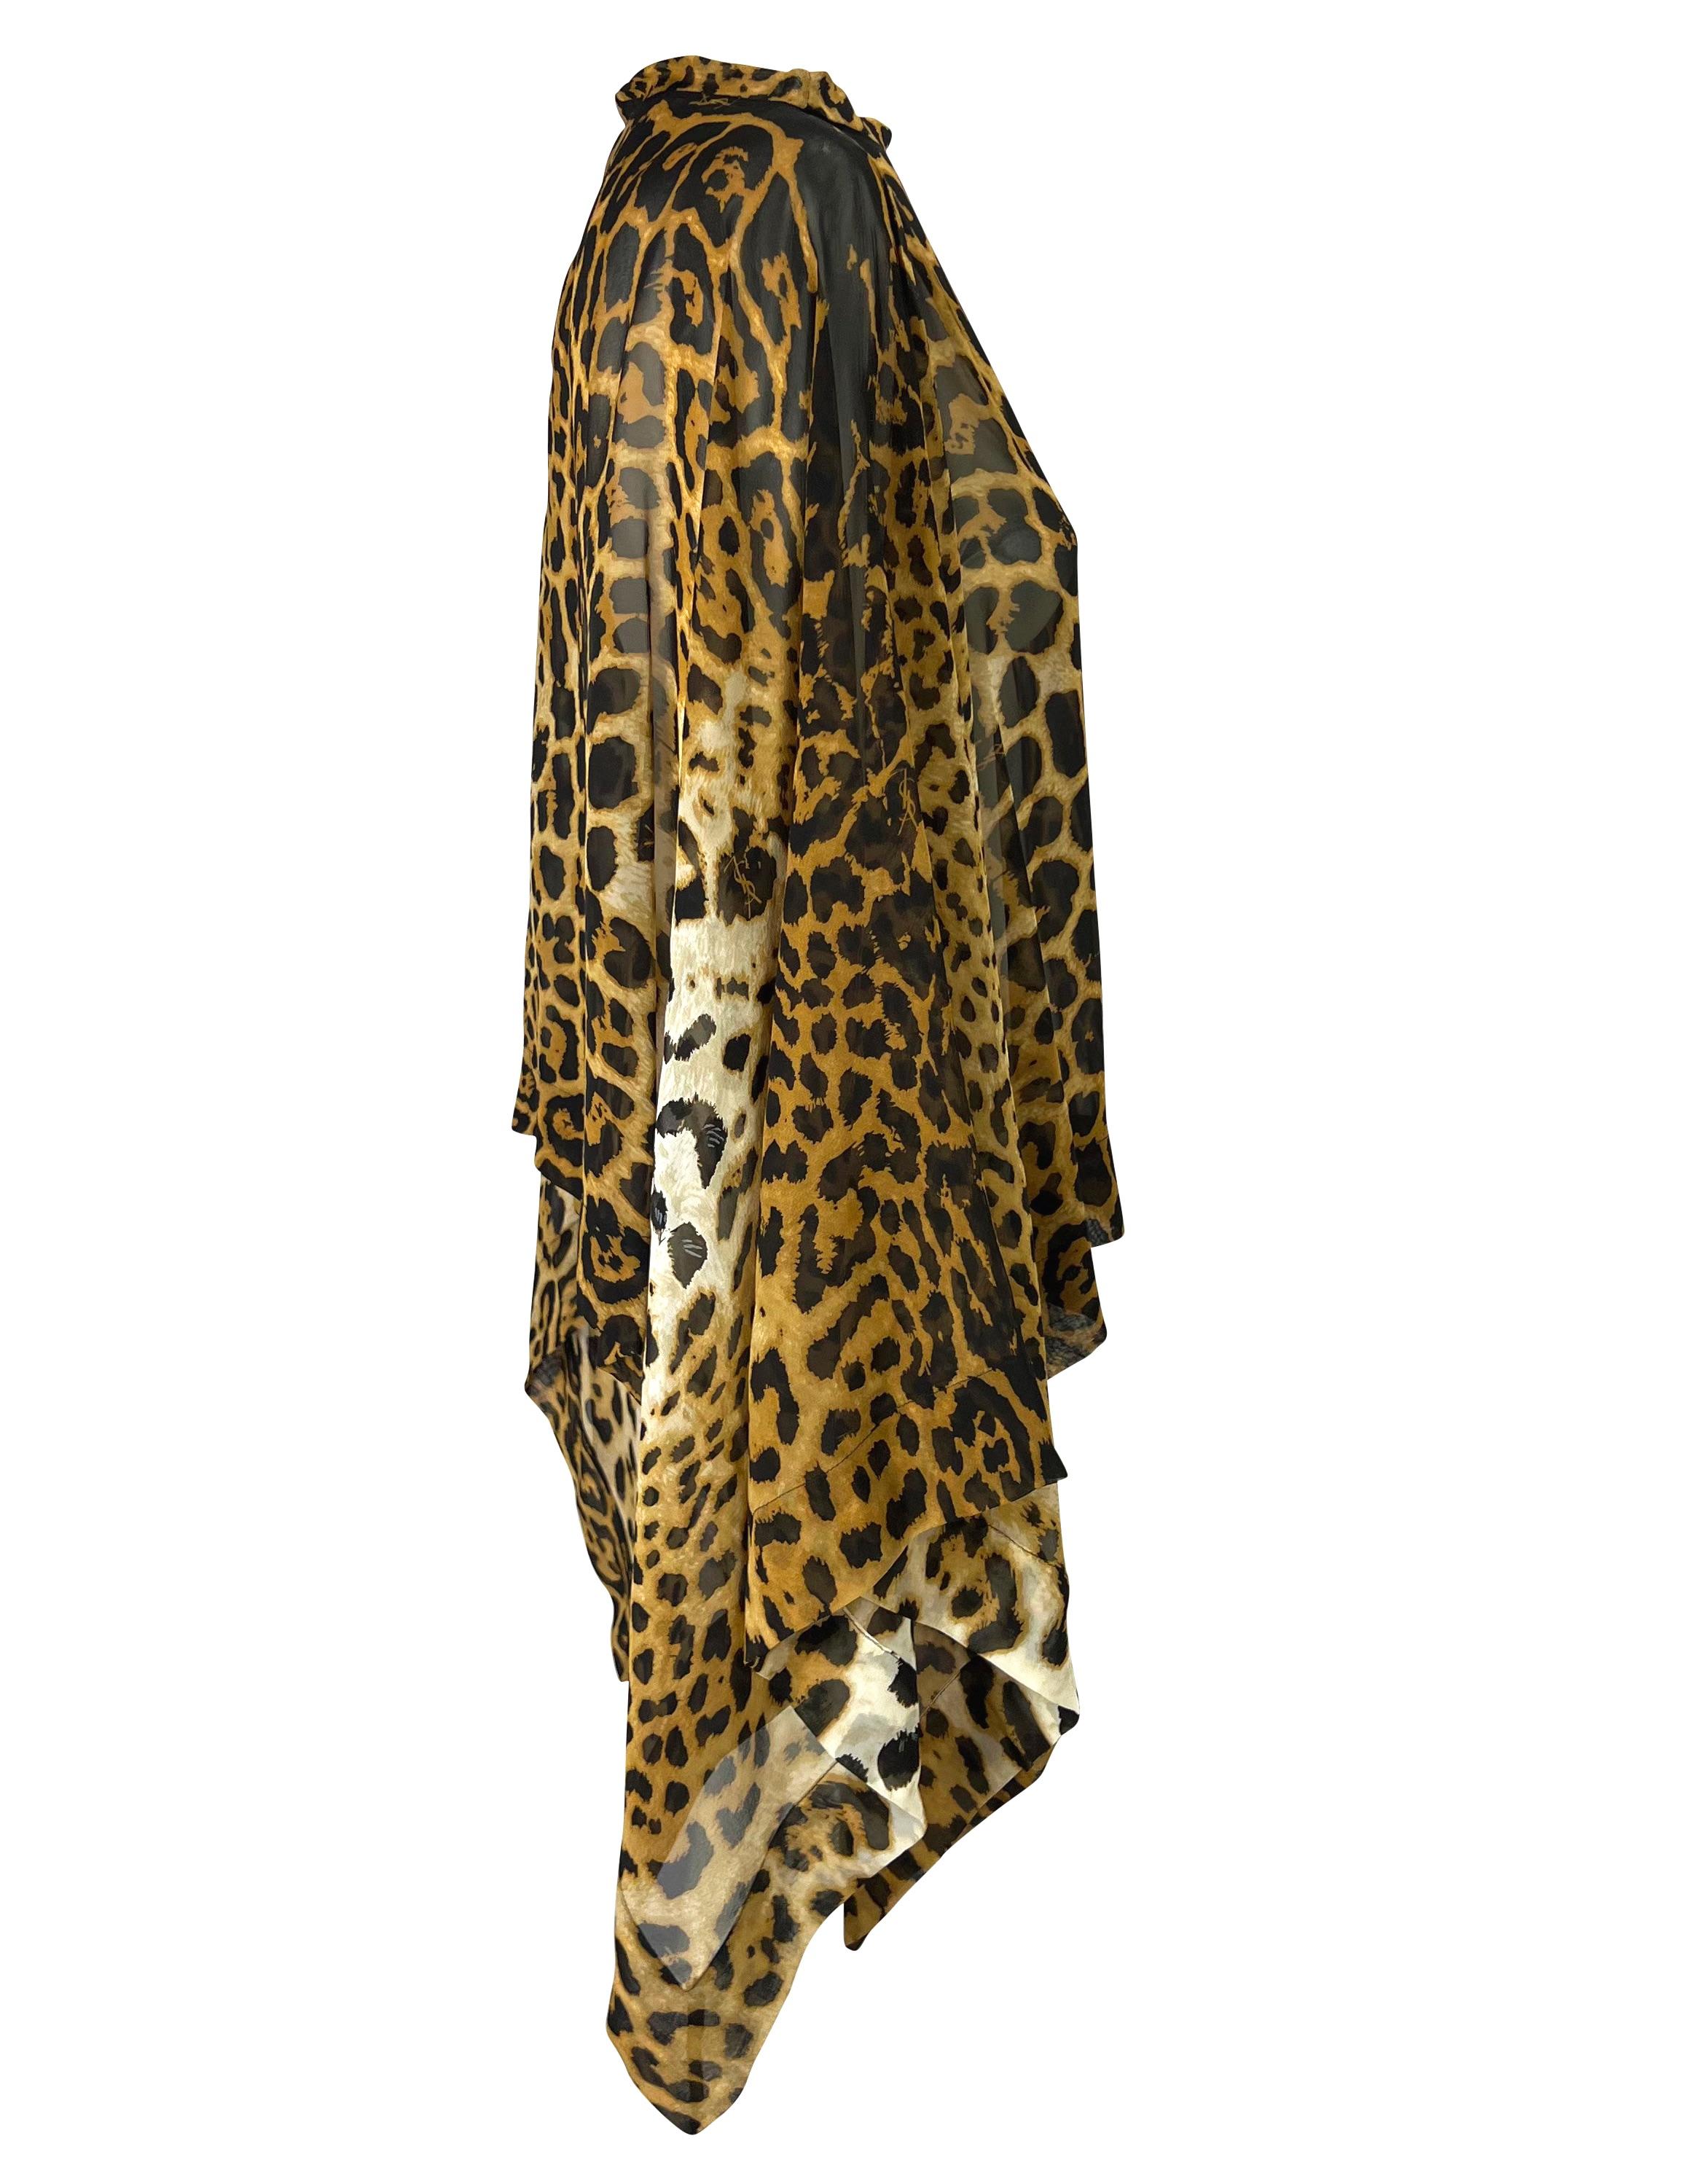 F/S 2002 Yves Saint Laurent by Tom Ford Safari Cheetah Print Transparenter Kaftan Kurz Damen im Angebot